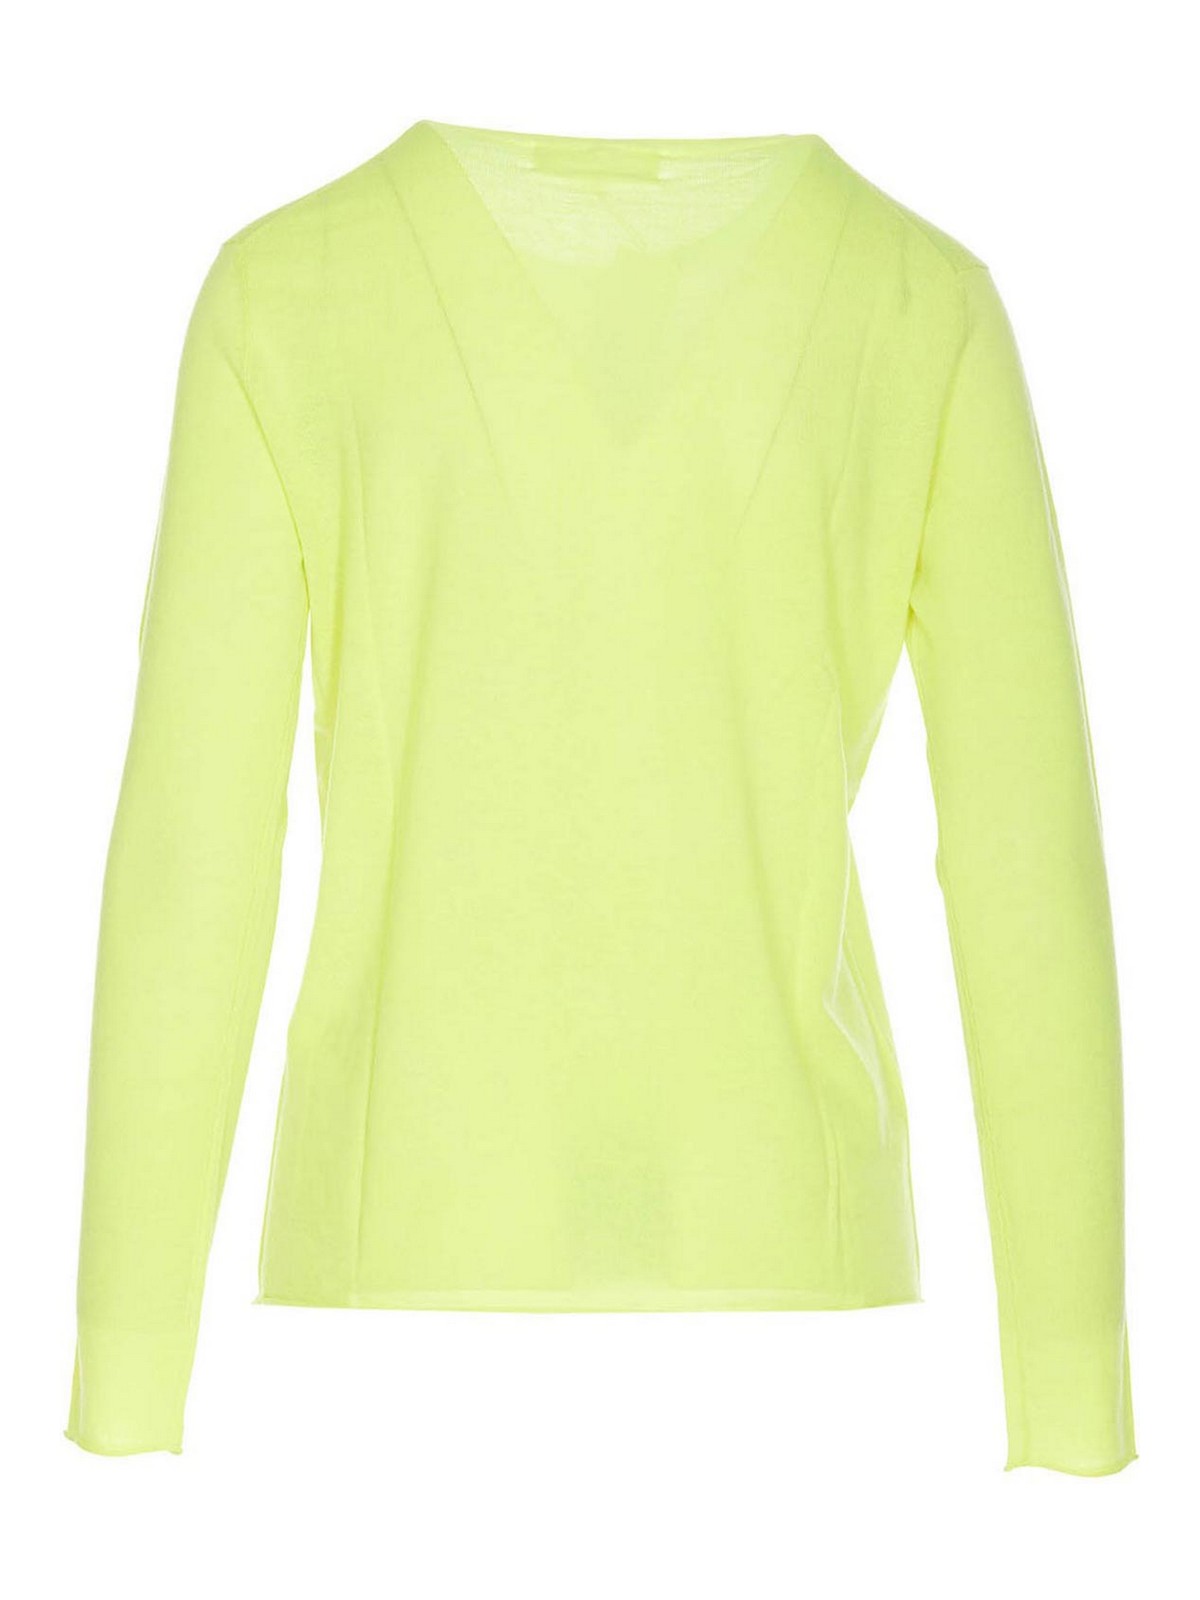 Shop Lisa Yang Alba Sweater In Yellow